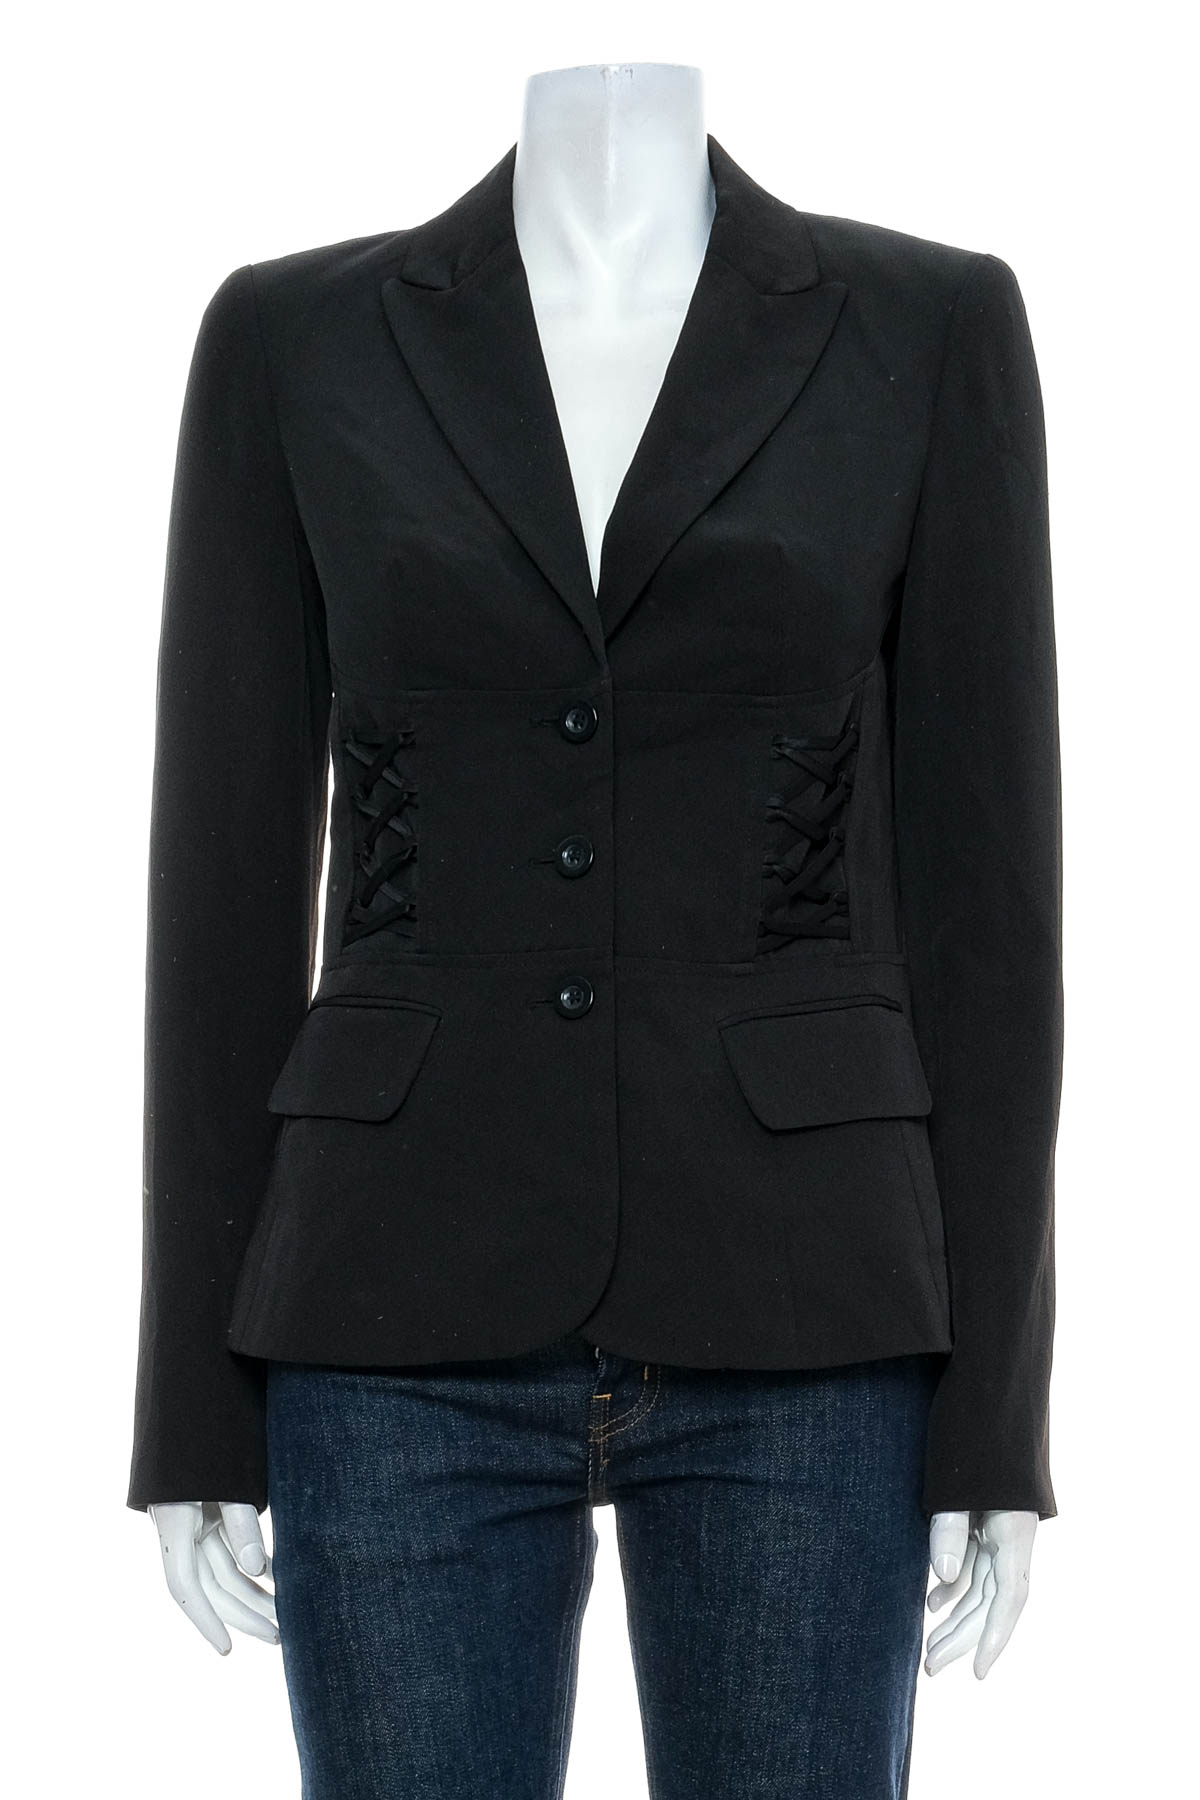 Women's blazer - Suzy Shier - 0